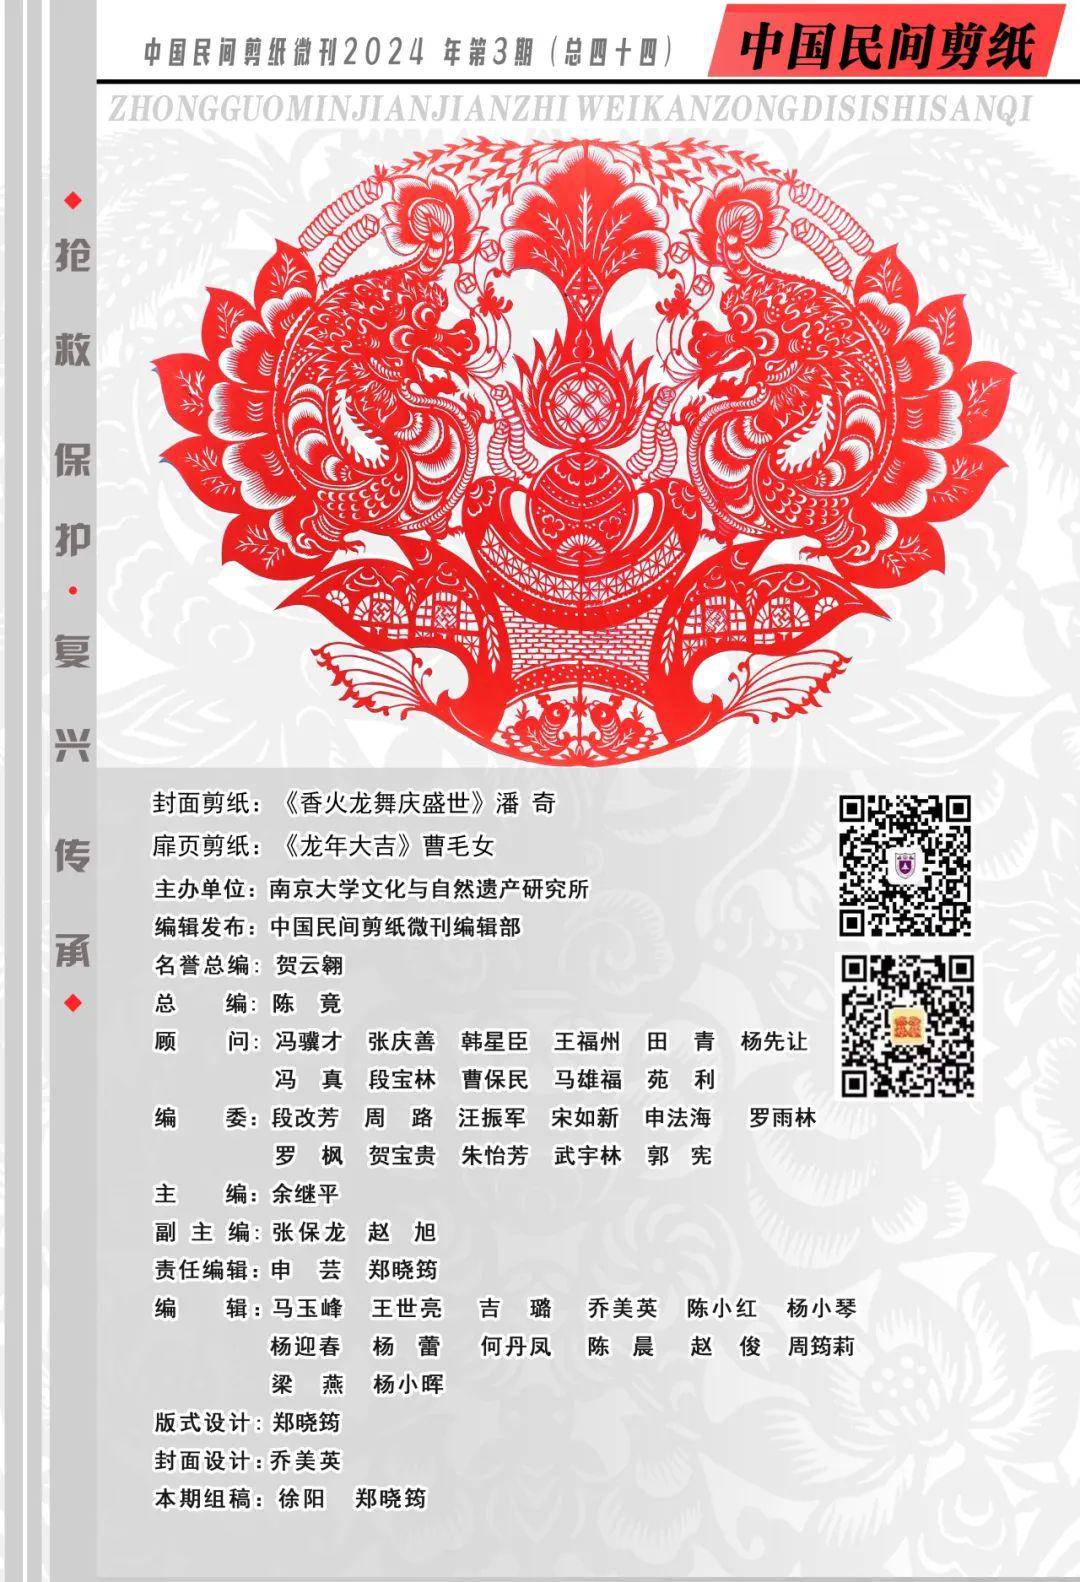 中国民间剪纸微刊《百年献瑞迎新年》全国龙文化剪纸精品展览 图2